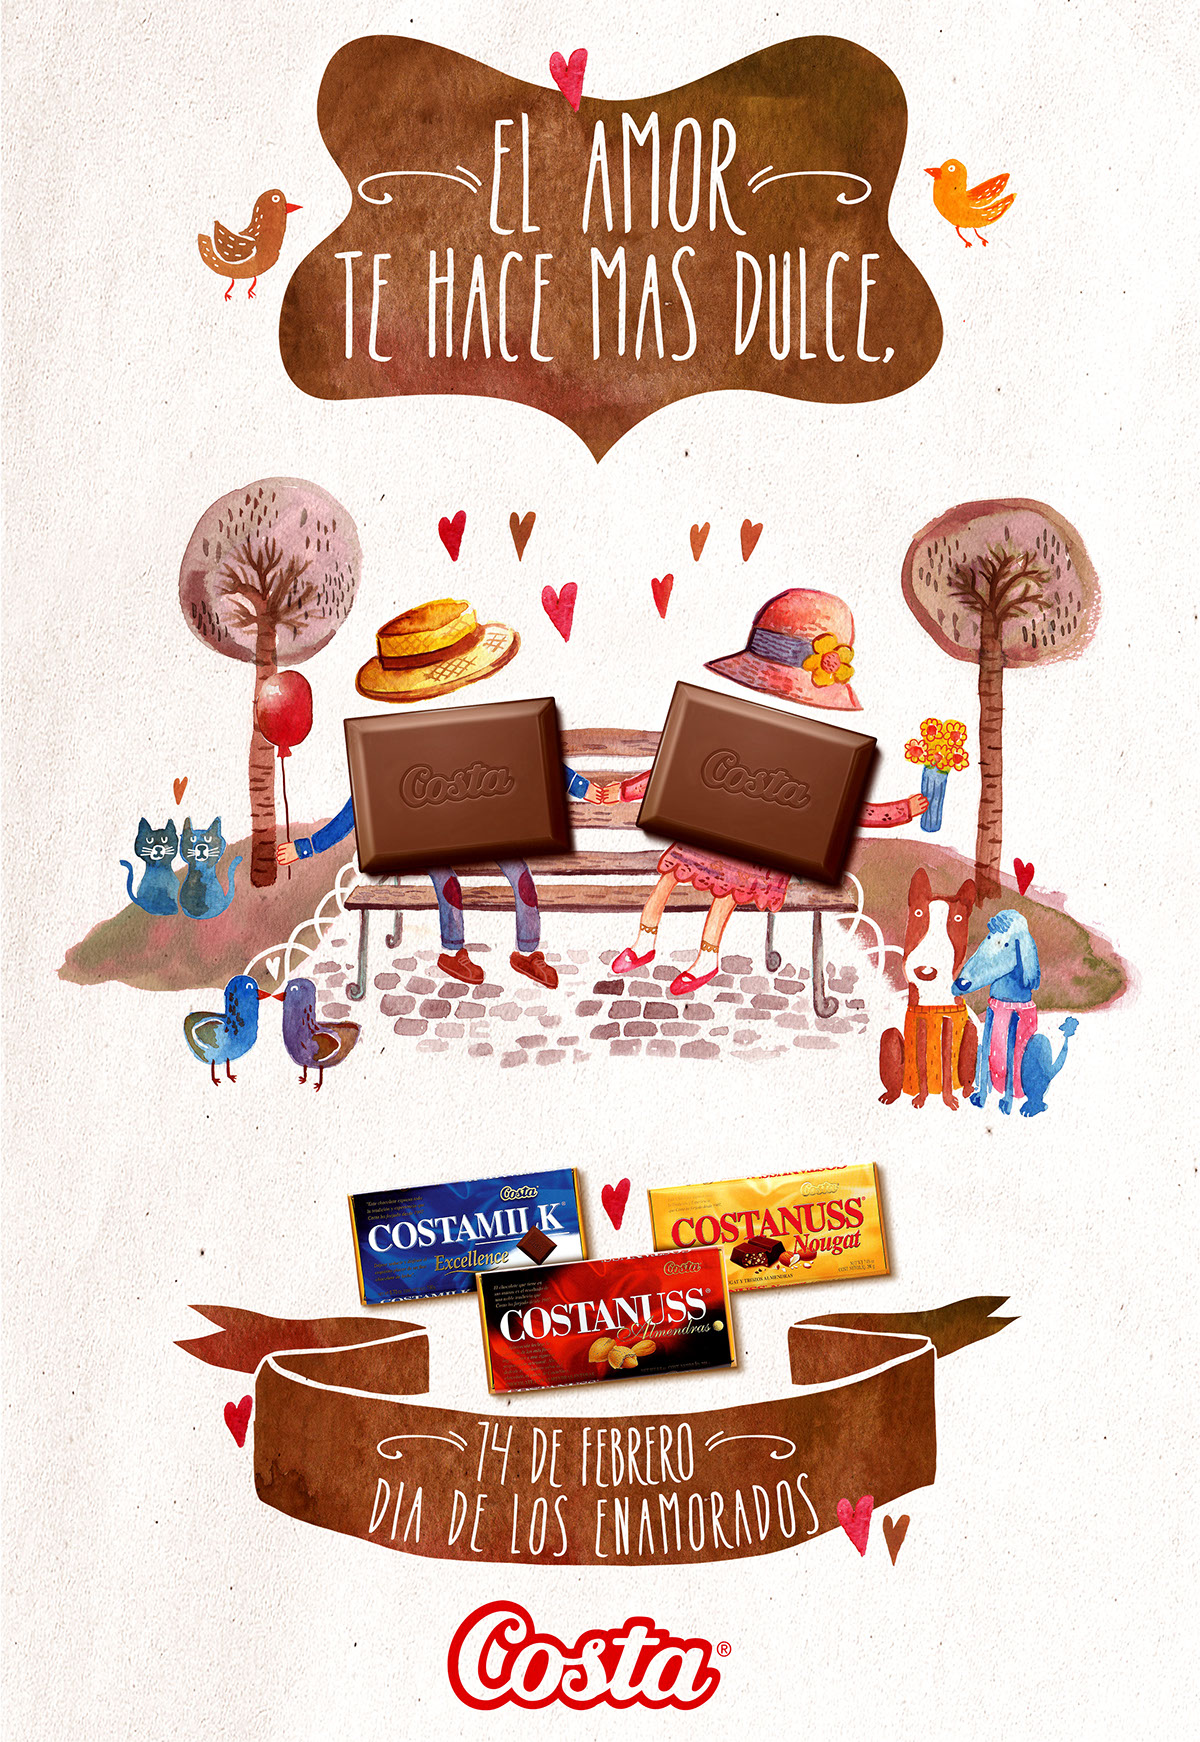 enamorados Costa ilustracion garvo grafica chocolates